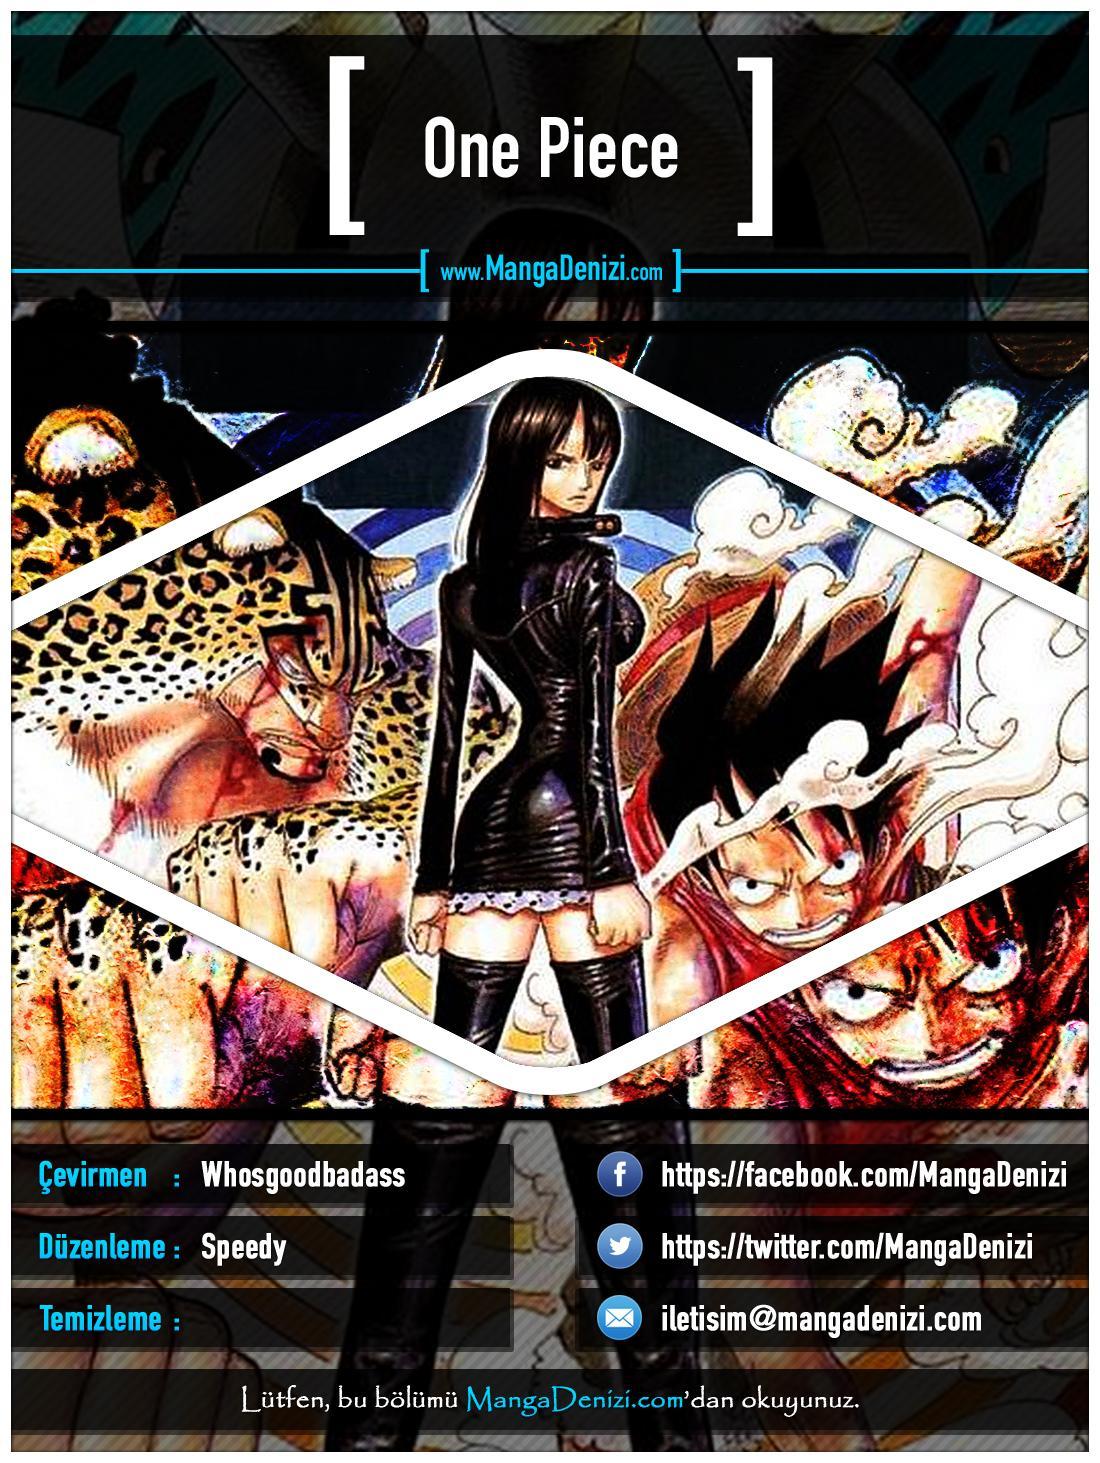 One Piece [Renkli] mangasının 0380 bölümünün 1. sayfasını okuyorsunuz.